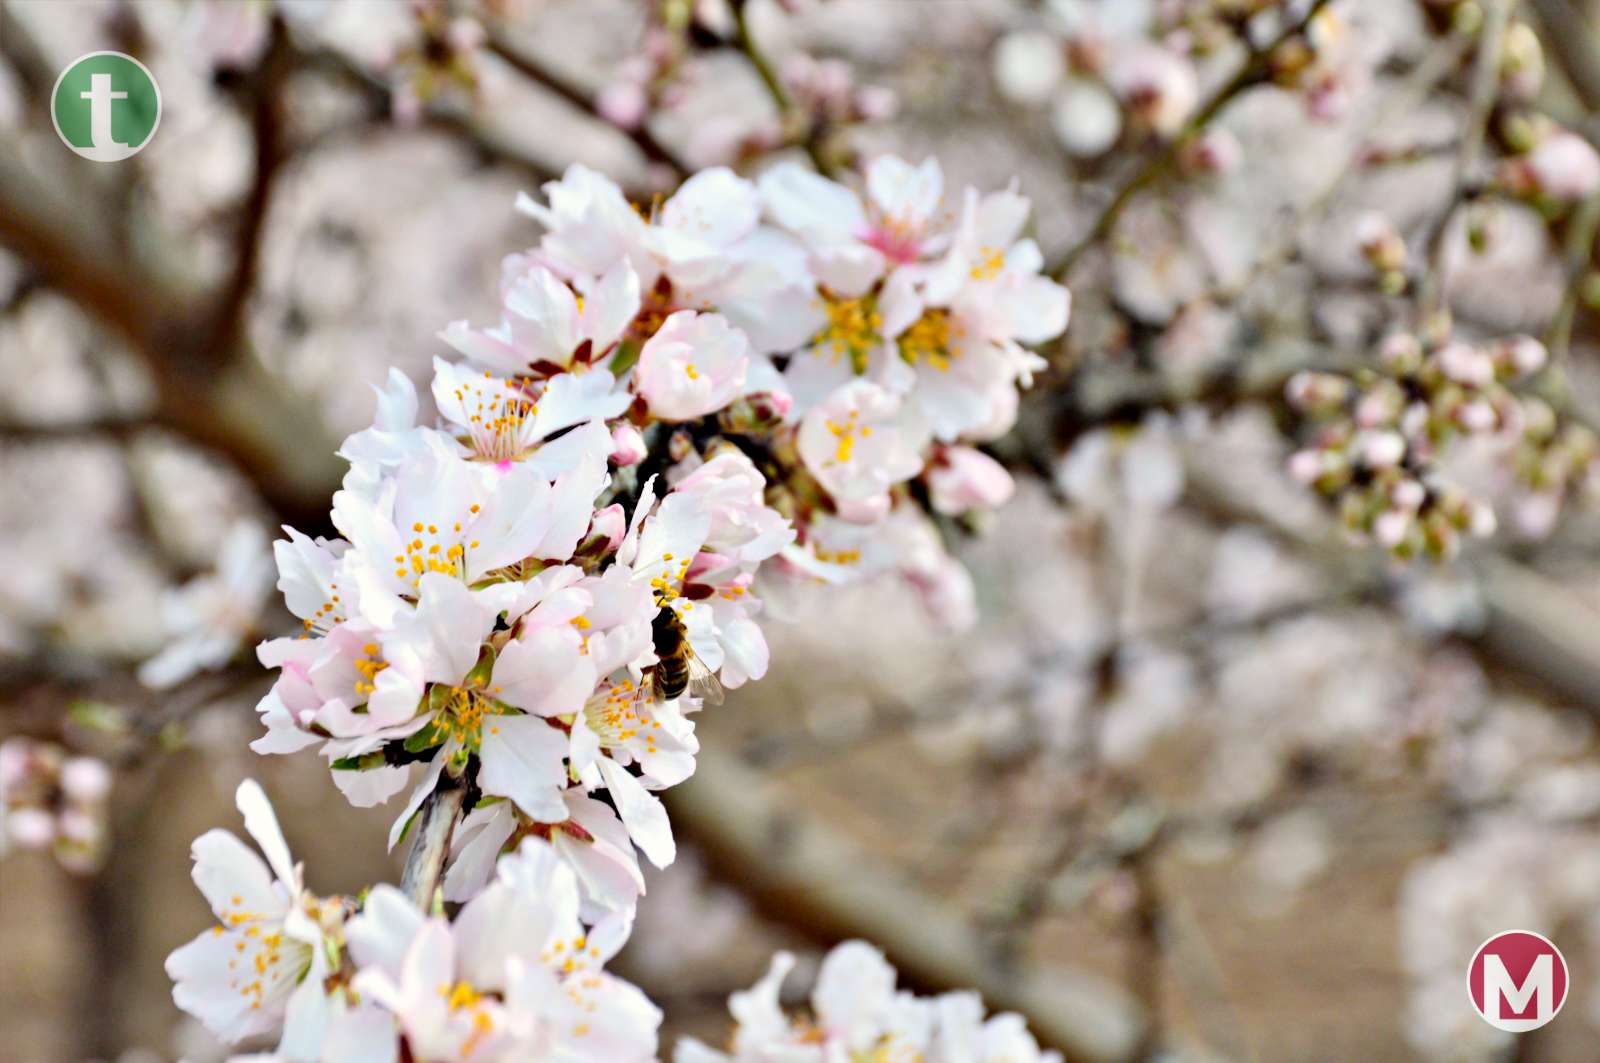 El espectáculo de la floración de los almendros anticipa la alegría del paisaje primaveral en La Mancha